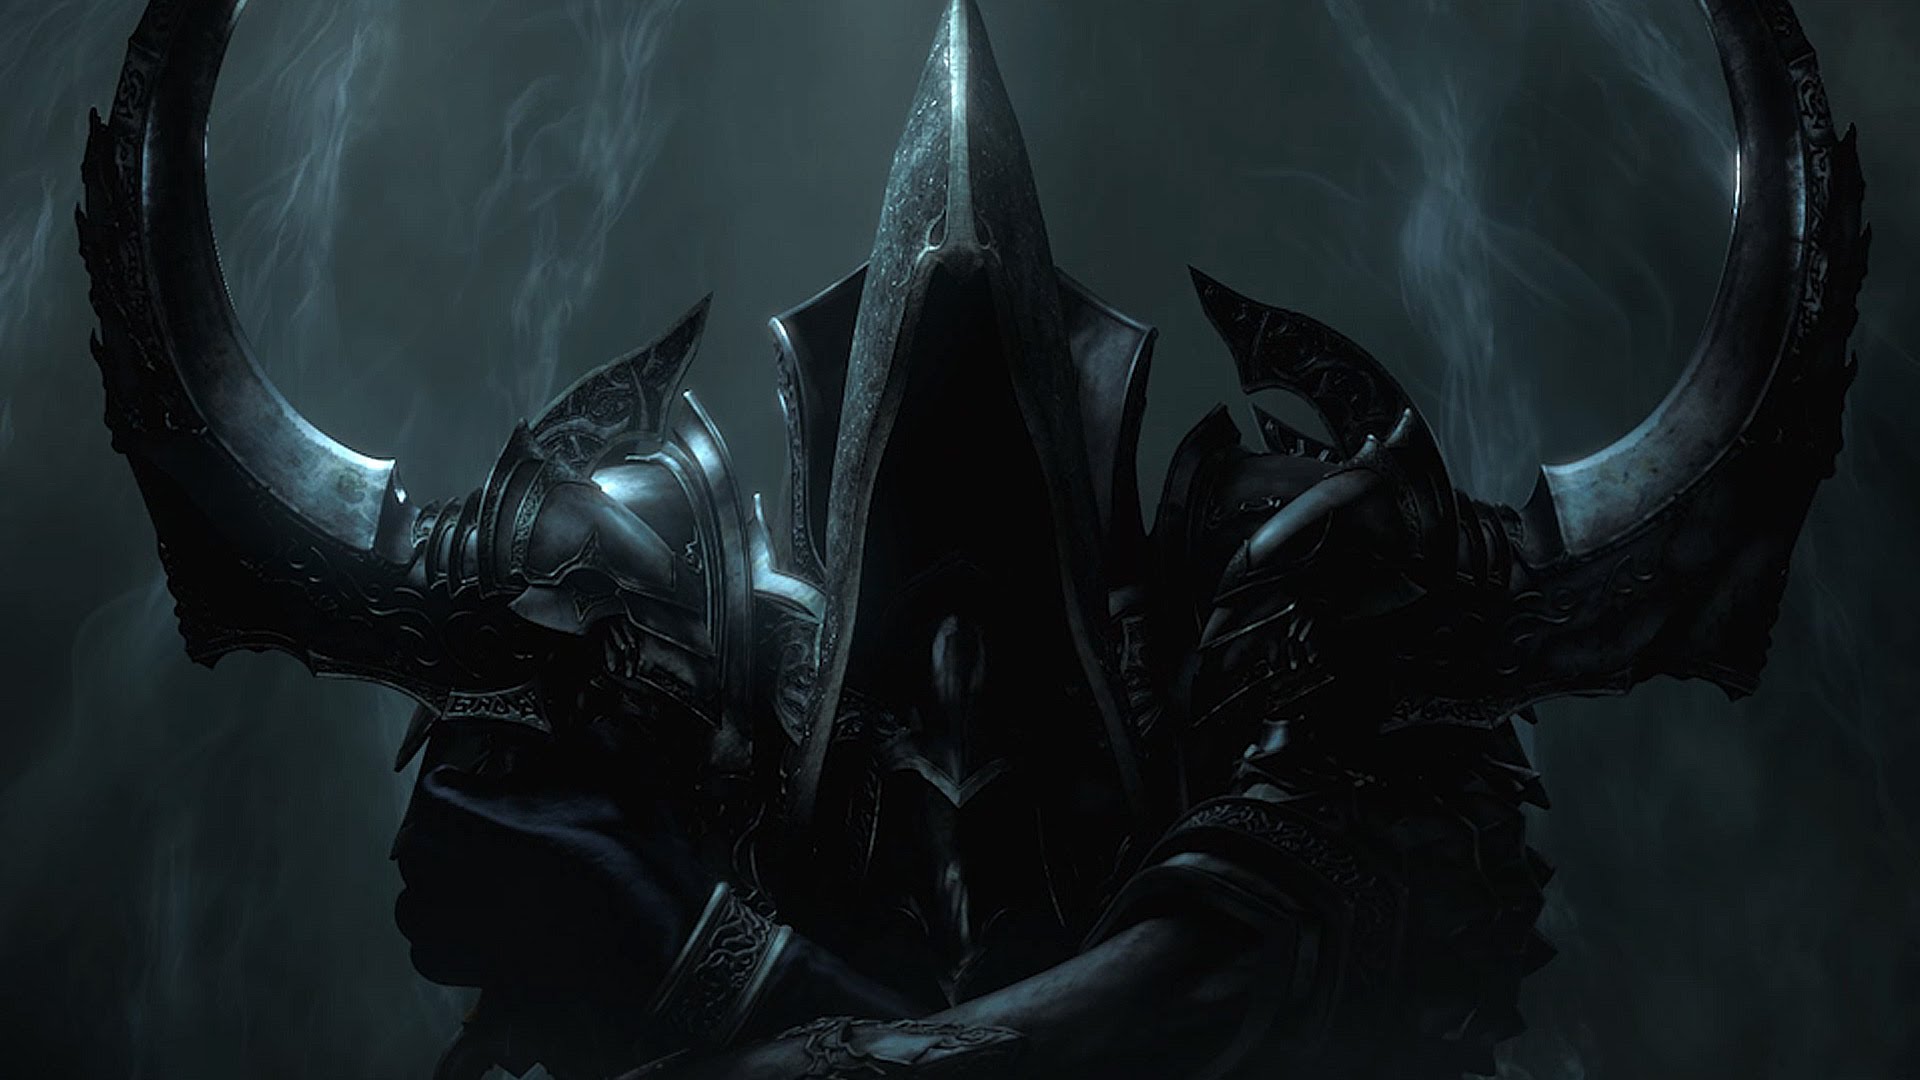 Foto (Reprodução): Blizzard anuncia Diablo III: Reaper of Souls.